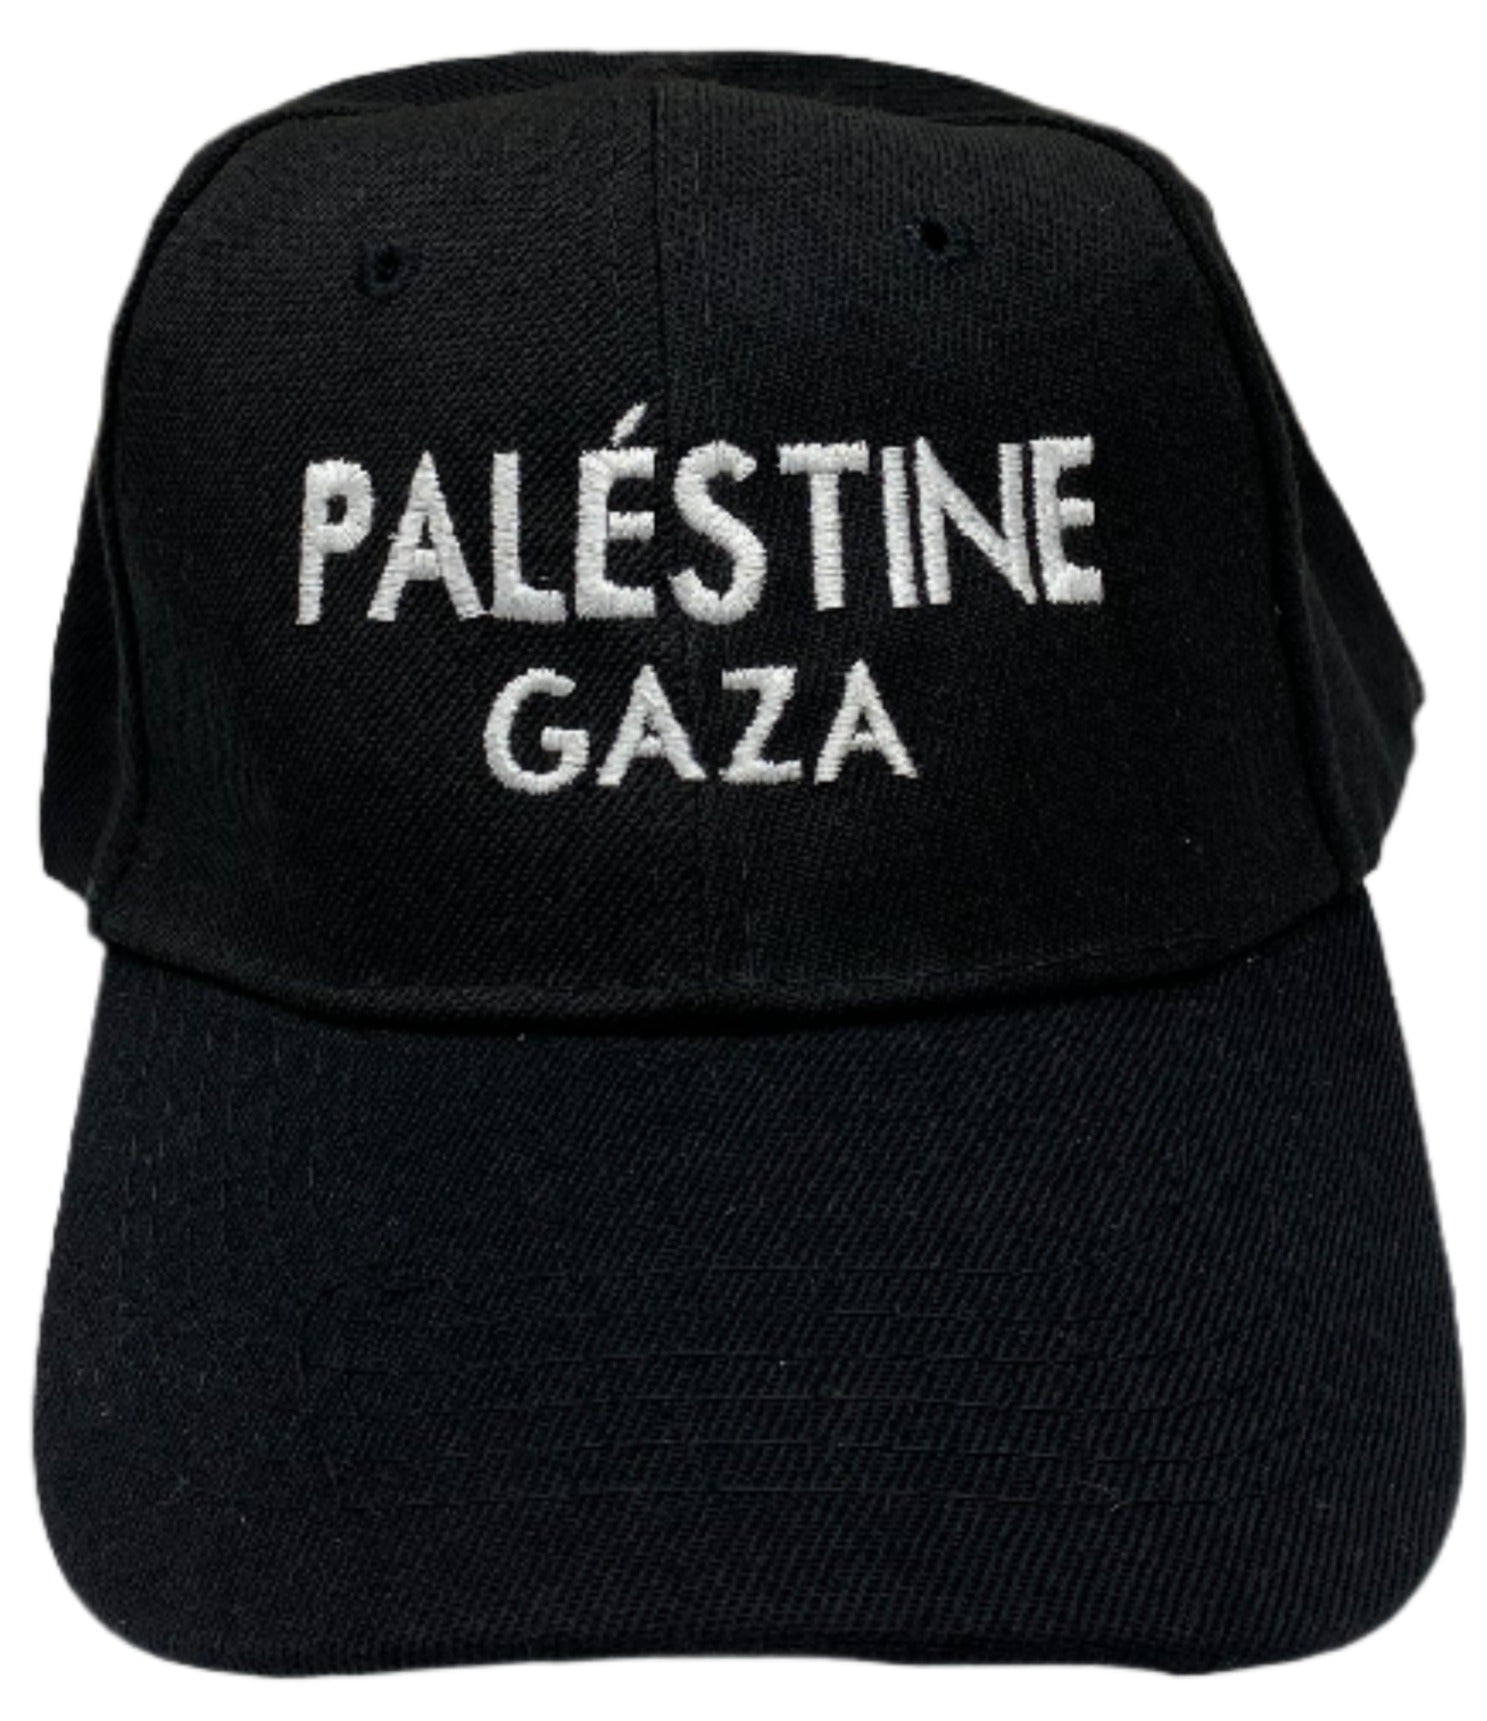 Palestine Gaza Hat